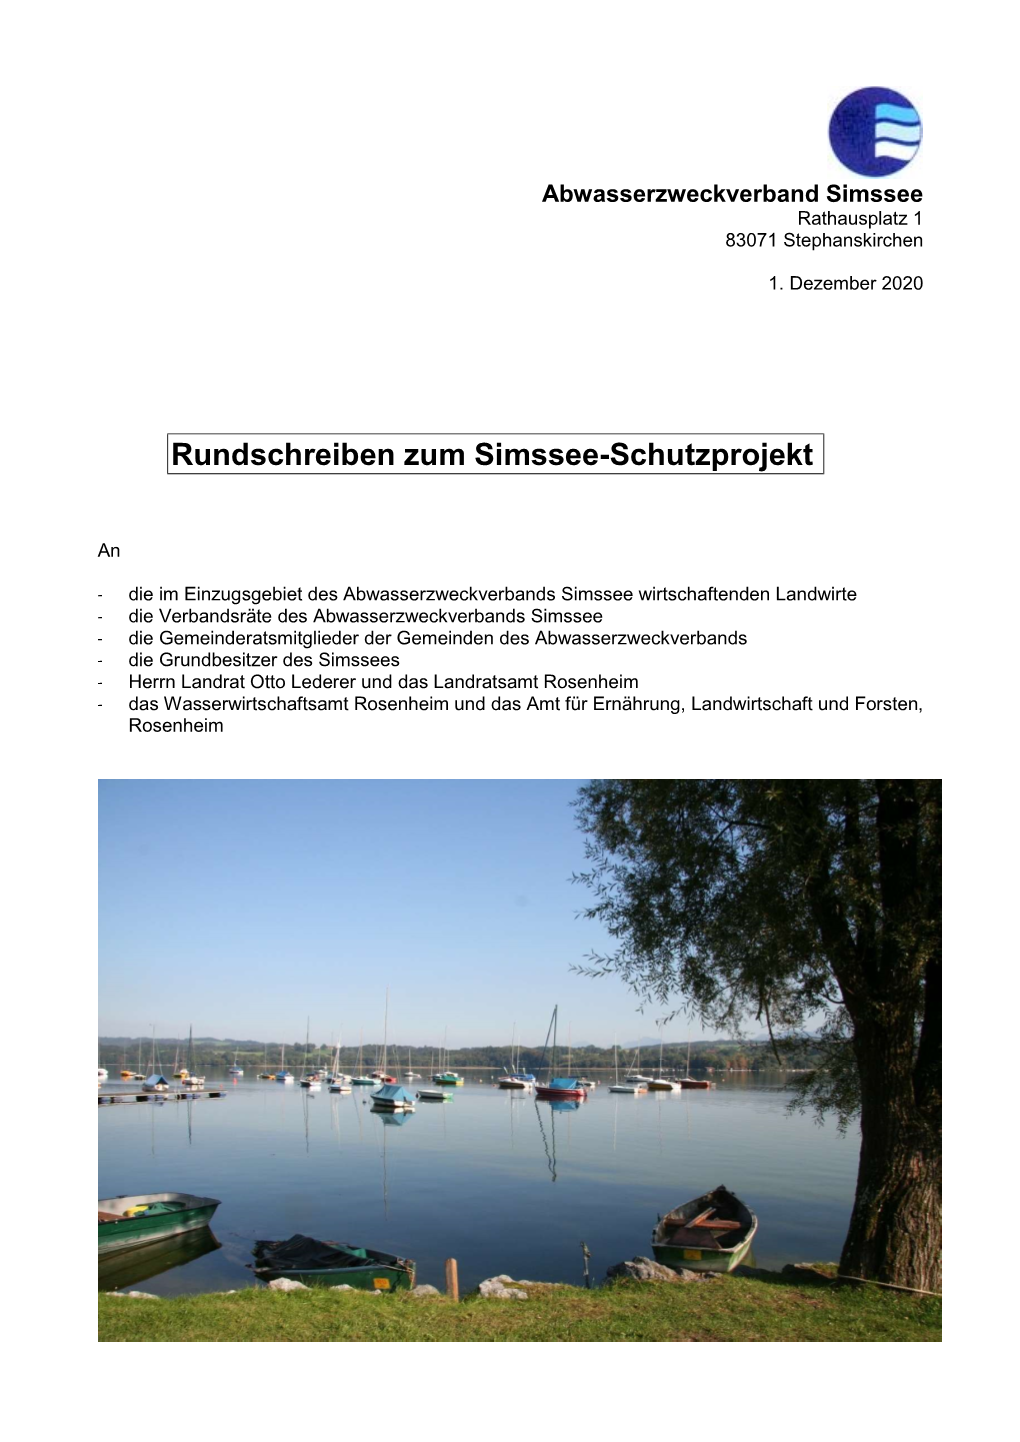 Rundschreiben Zum Simssee-Schutzprojekt